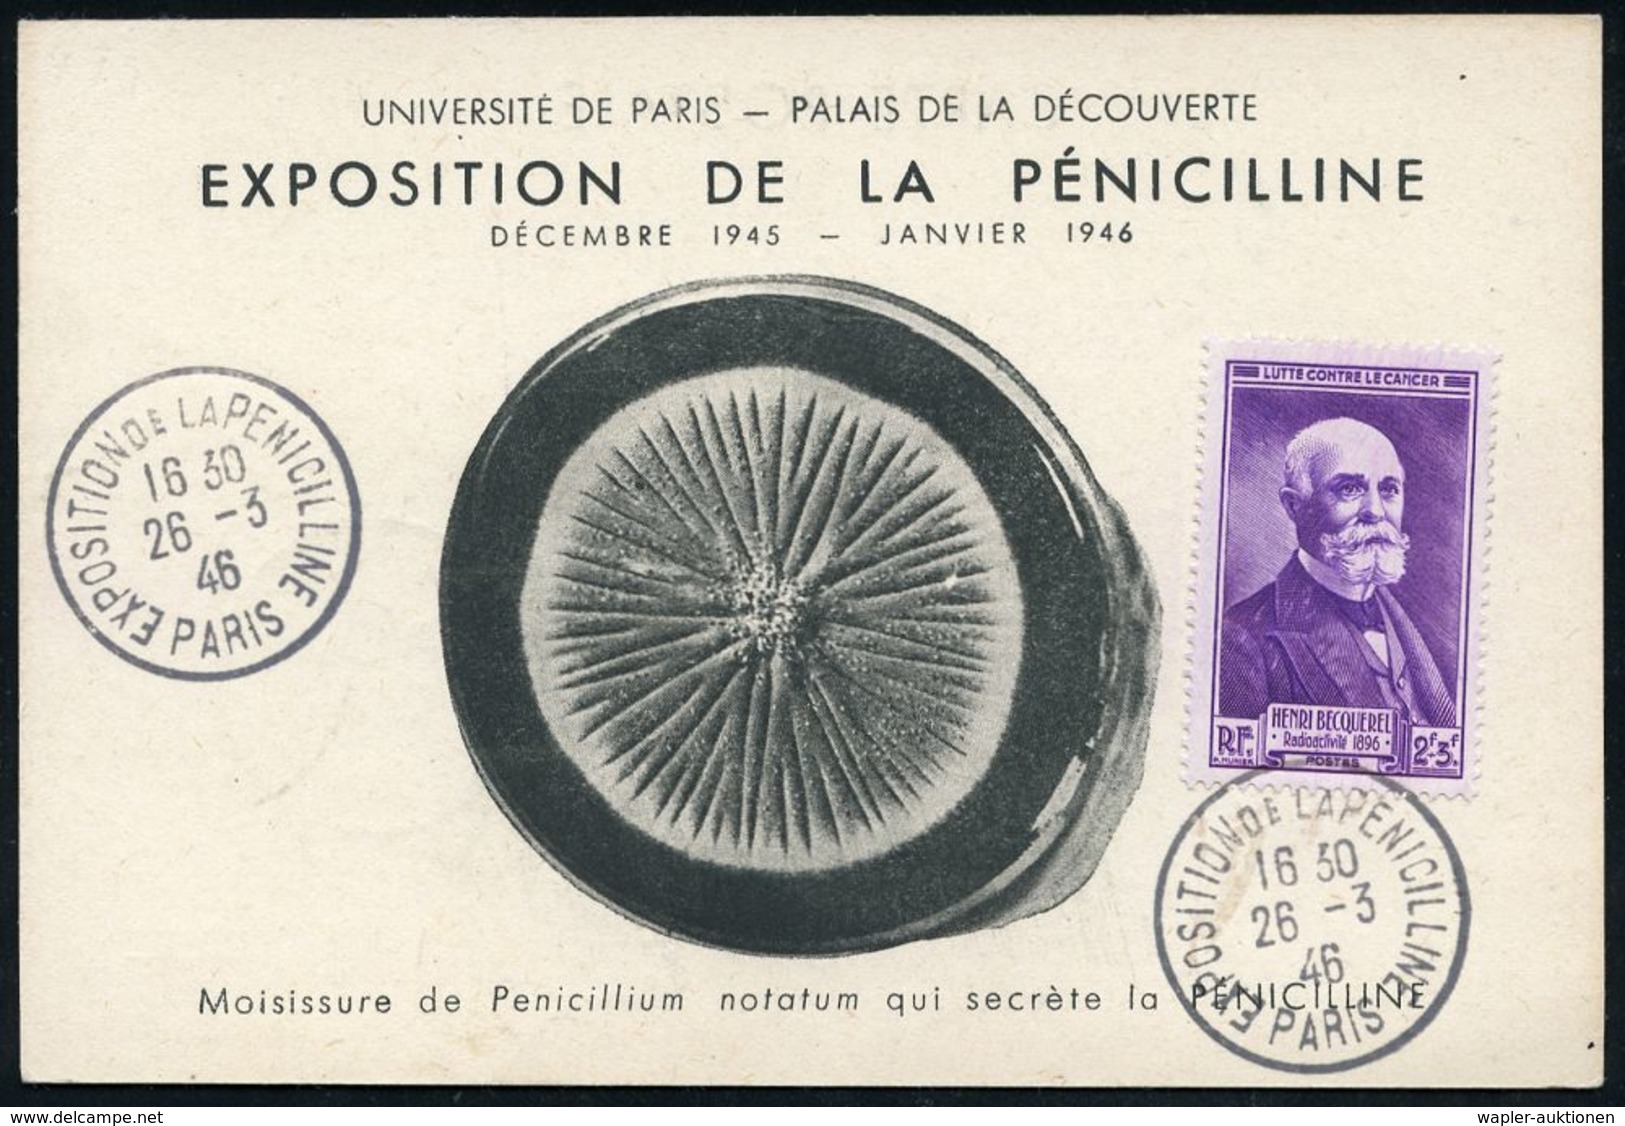 MEDIZINISCHE AUSSTELLUNGEN & KONGRESSE : FRANKREICH 1946 (26.3.) SSt.: PARIS/EXPOSITION DE LA PENICILINE (Penizilin-Auss - Medicine